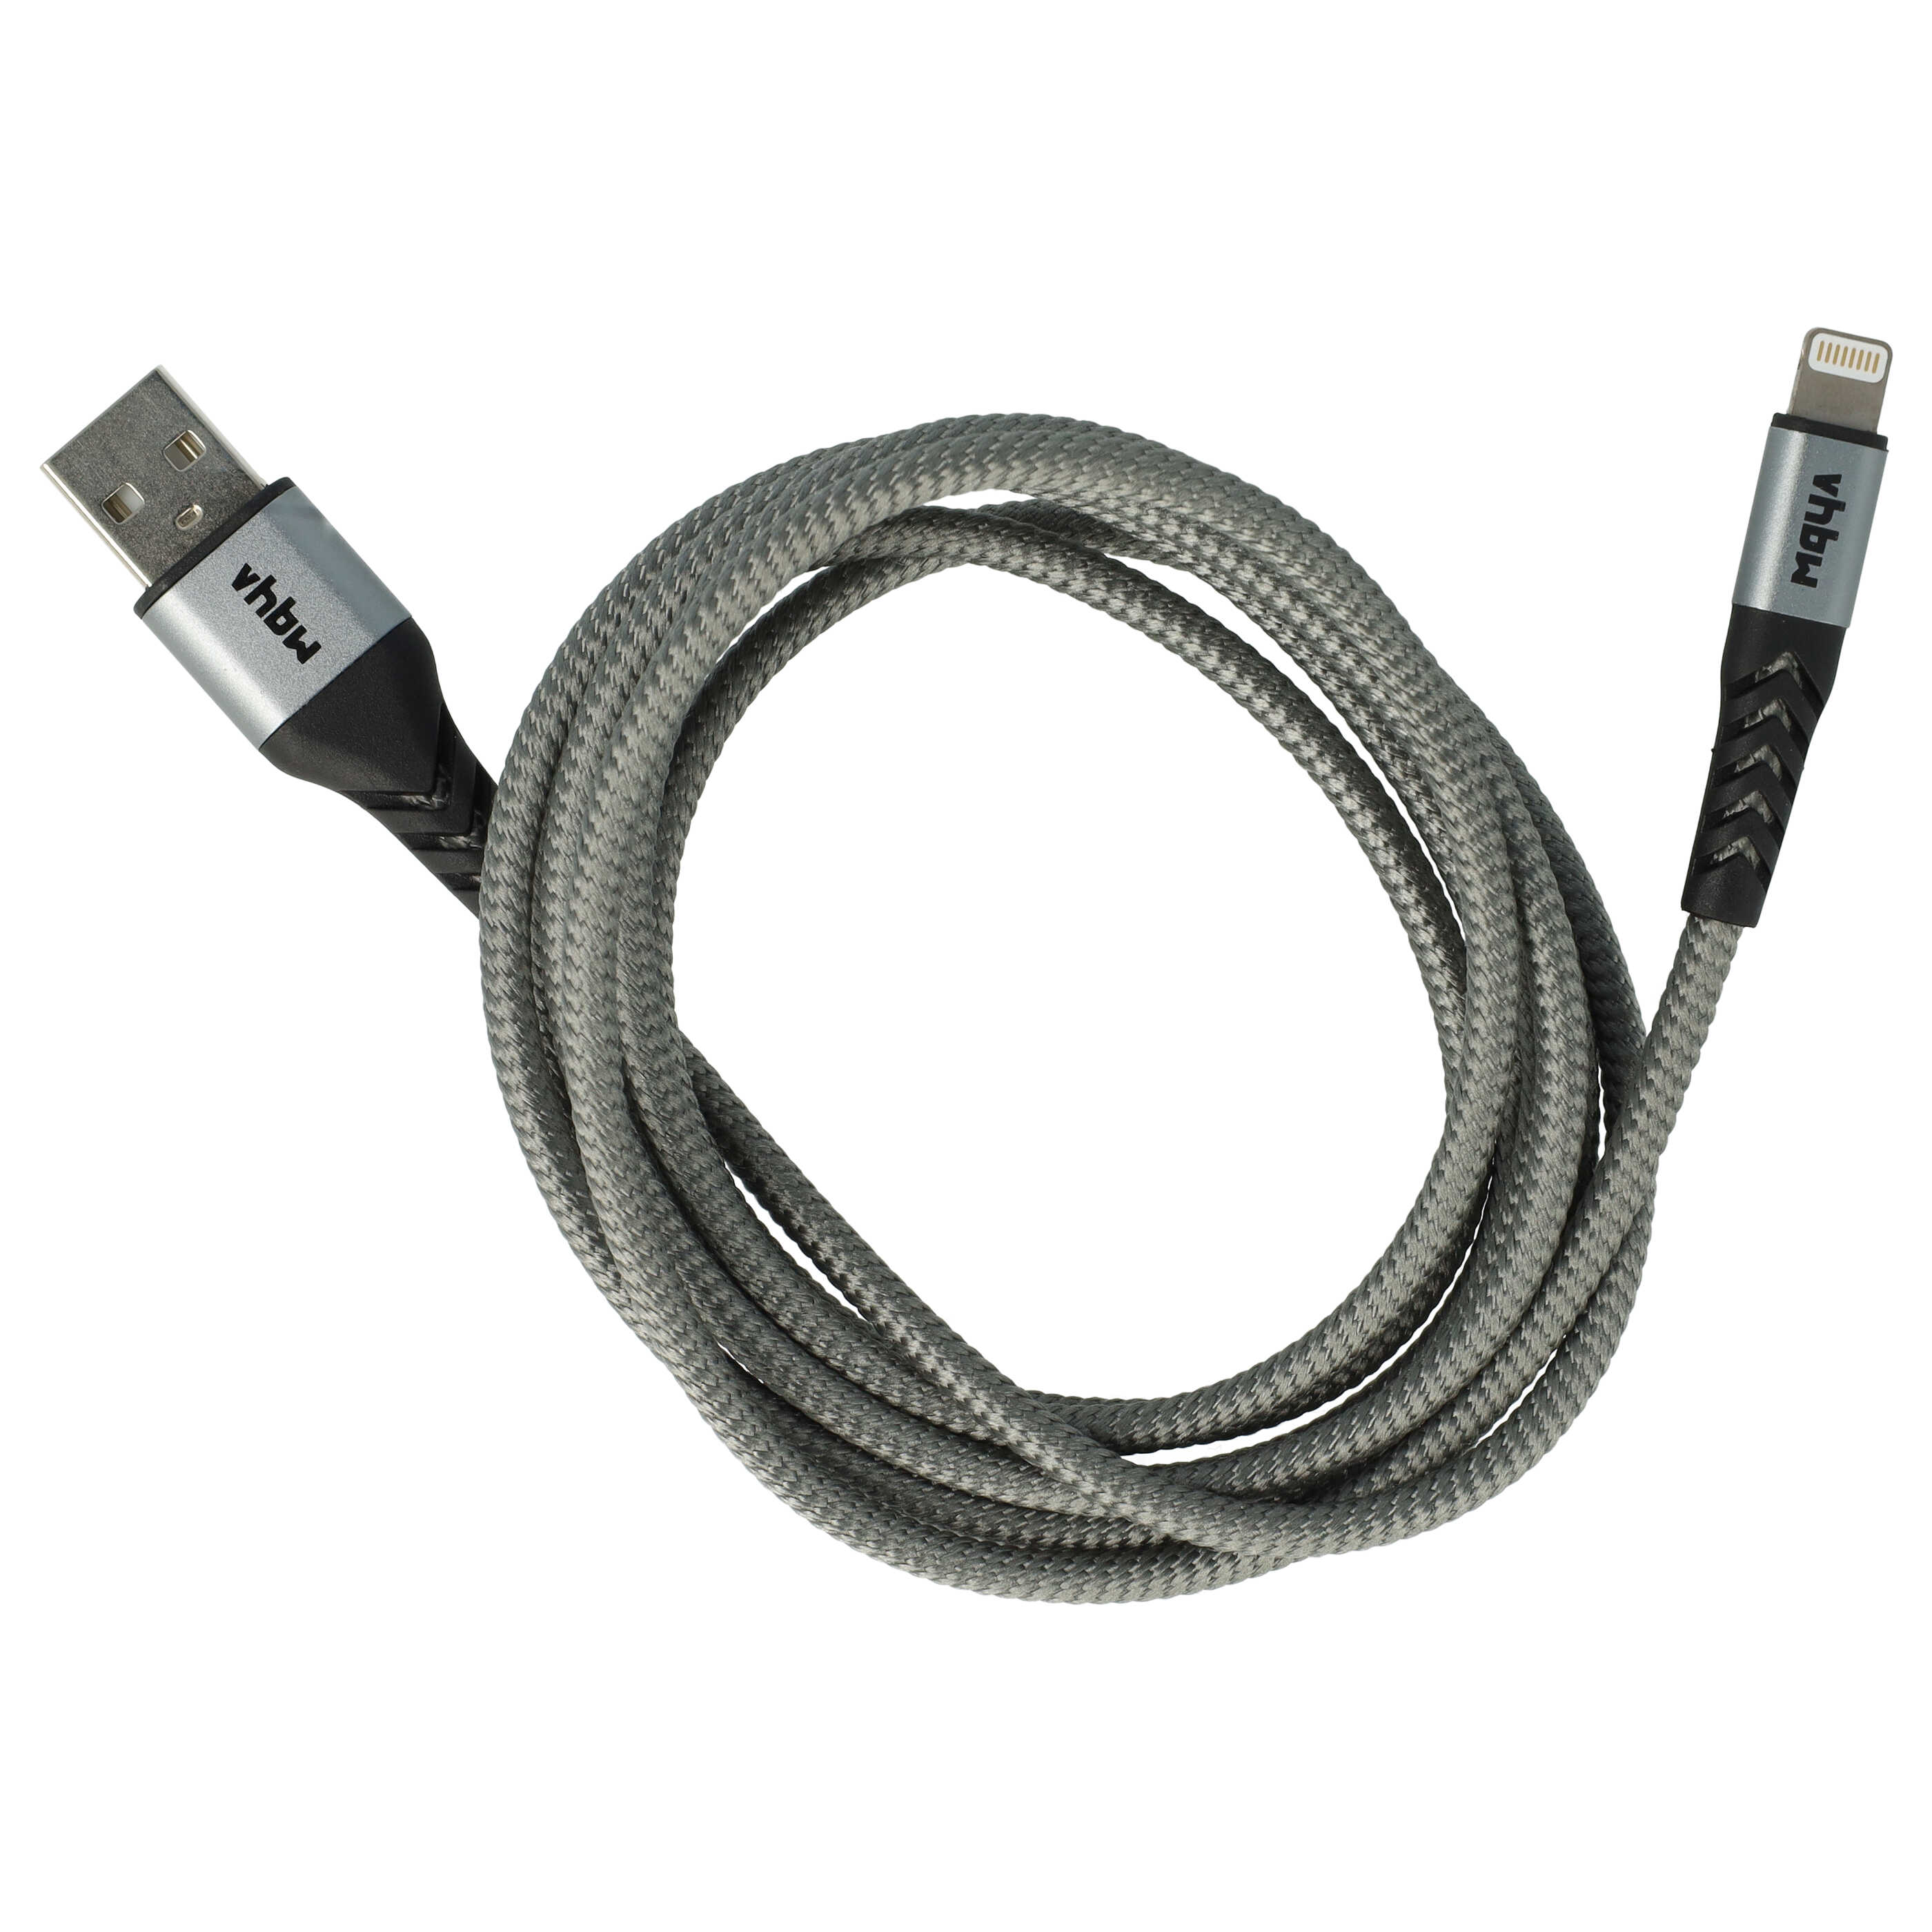 Kabel Lightning USB A do urządzeń iOS 1. generacji - szary / czarny, 180 cm 